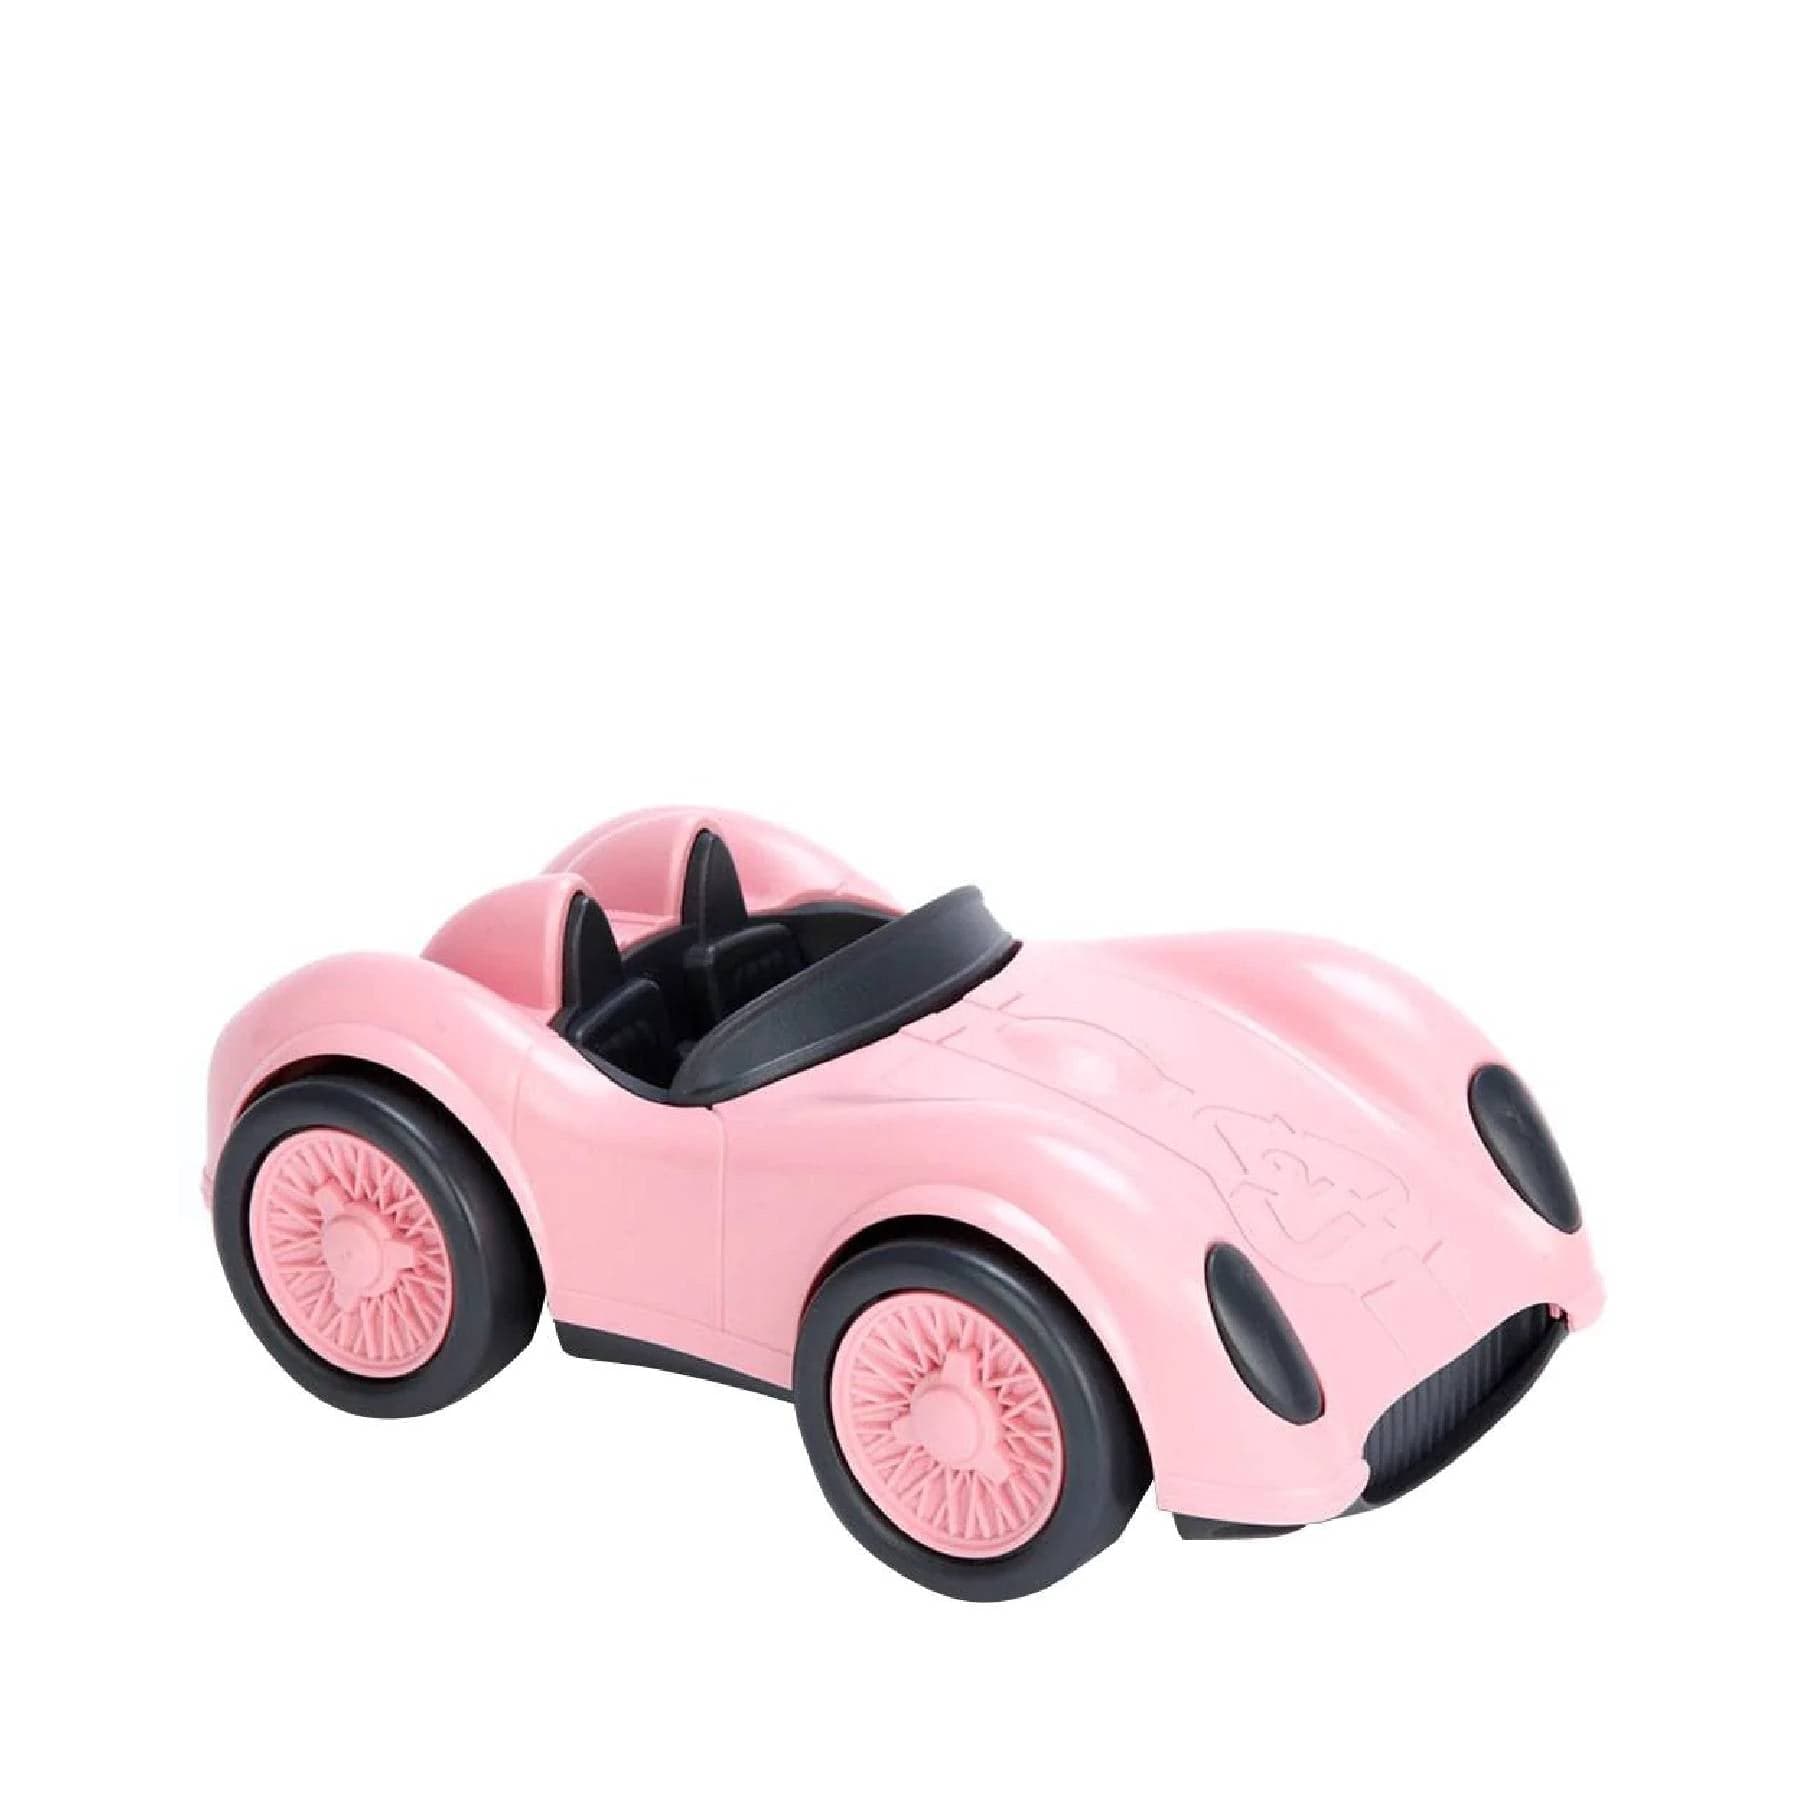 Racing car pink